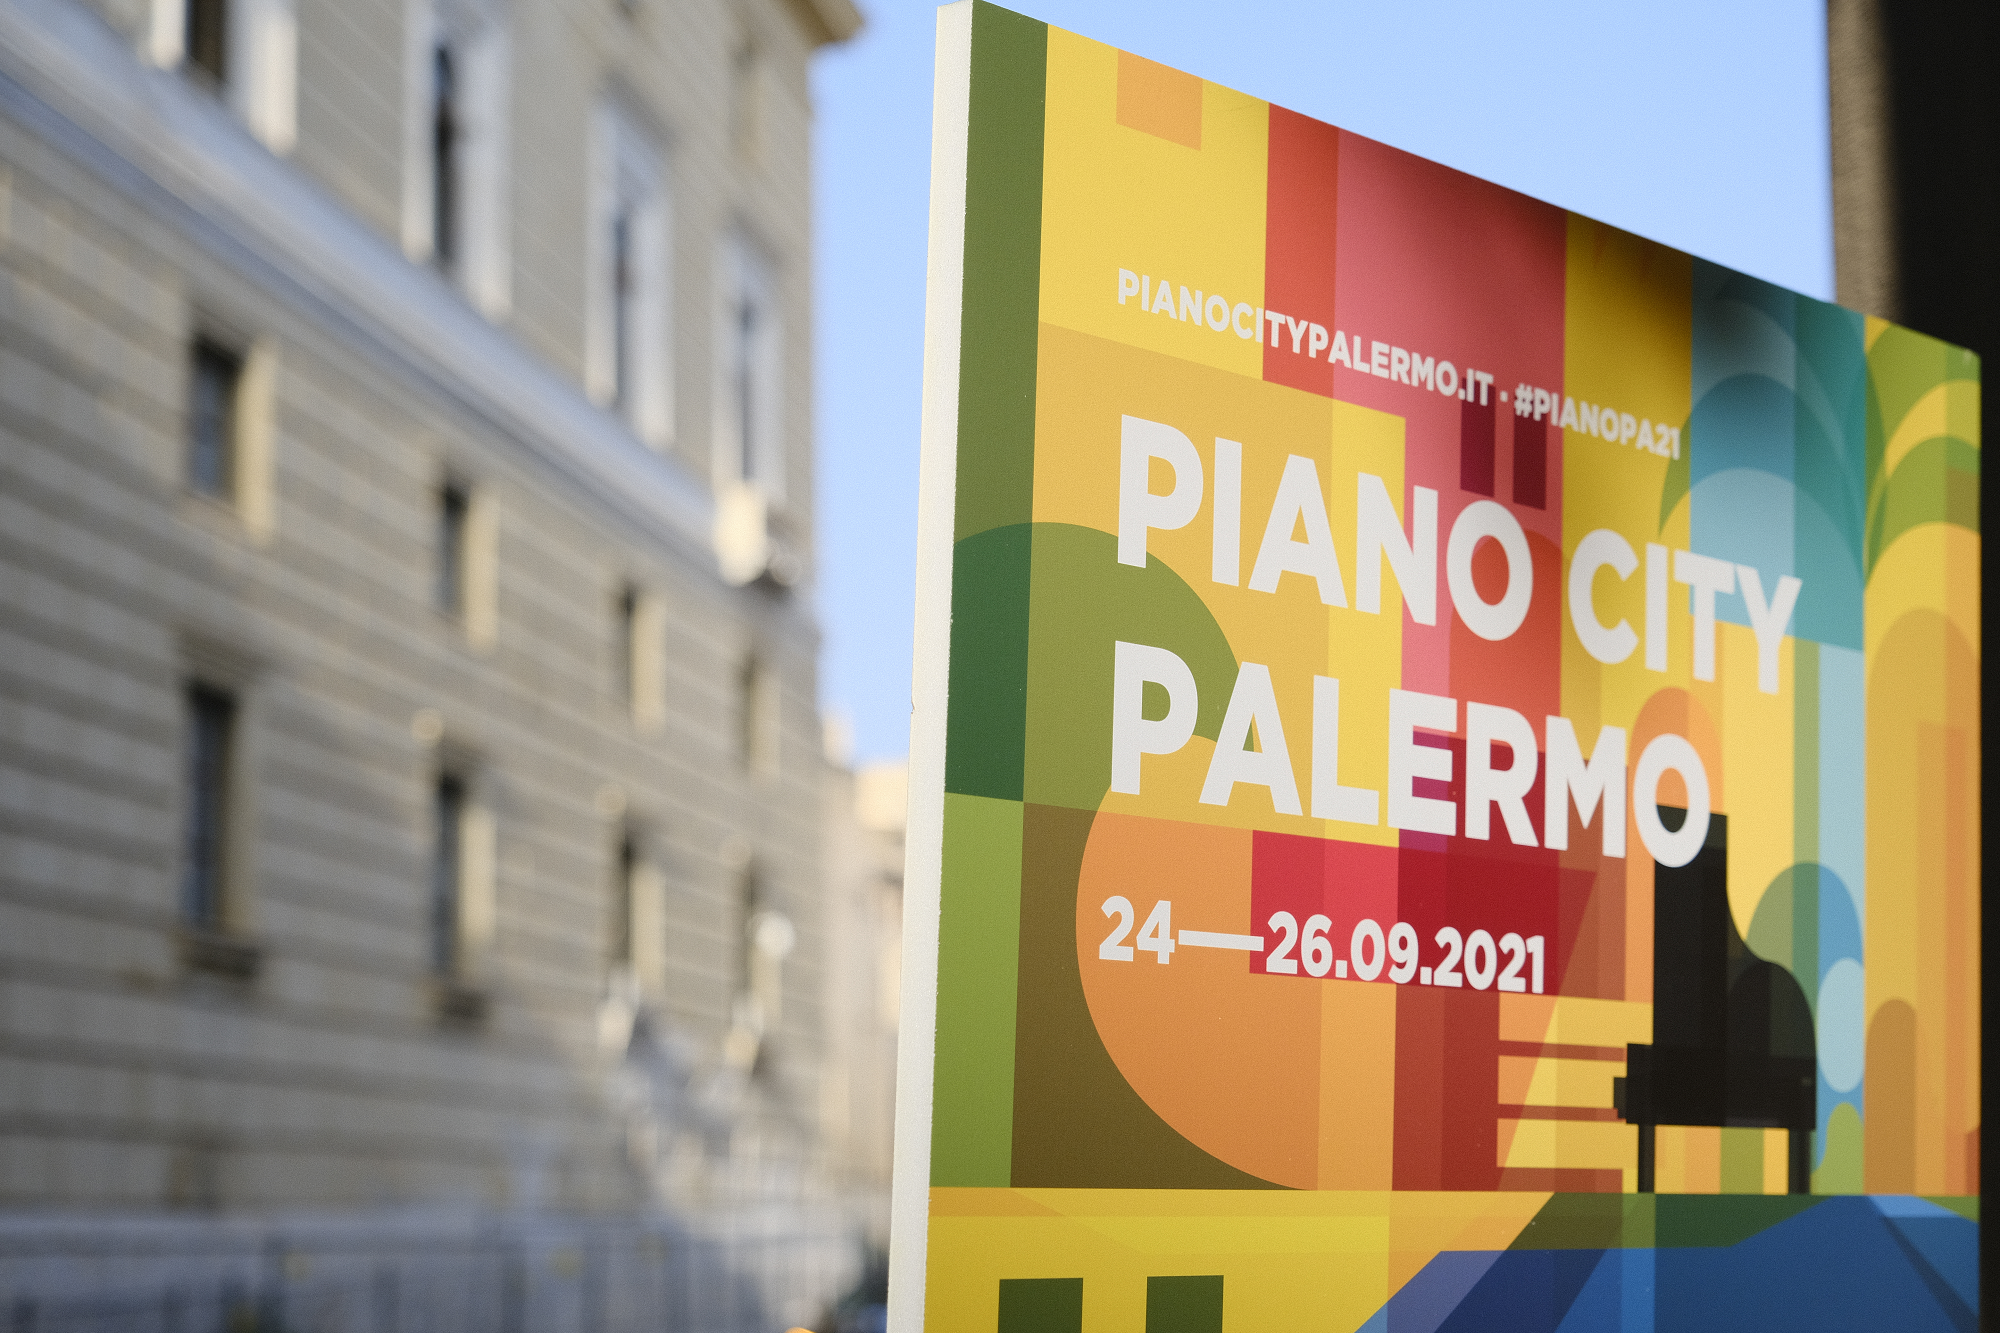 Piano City Palermo – Università degli Studi